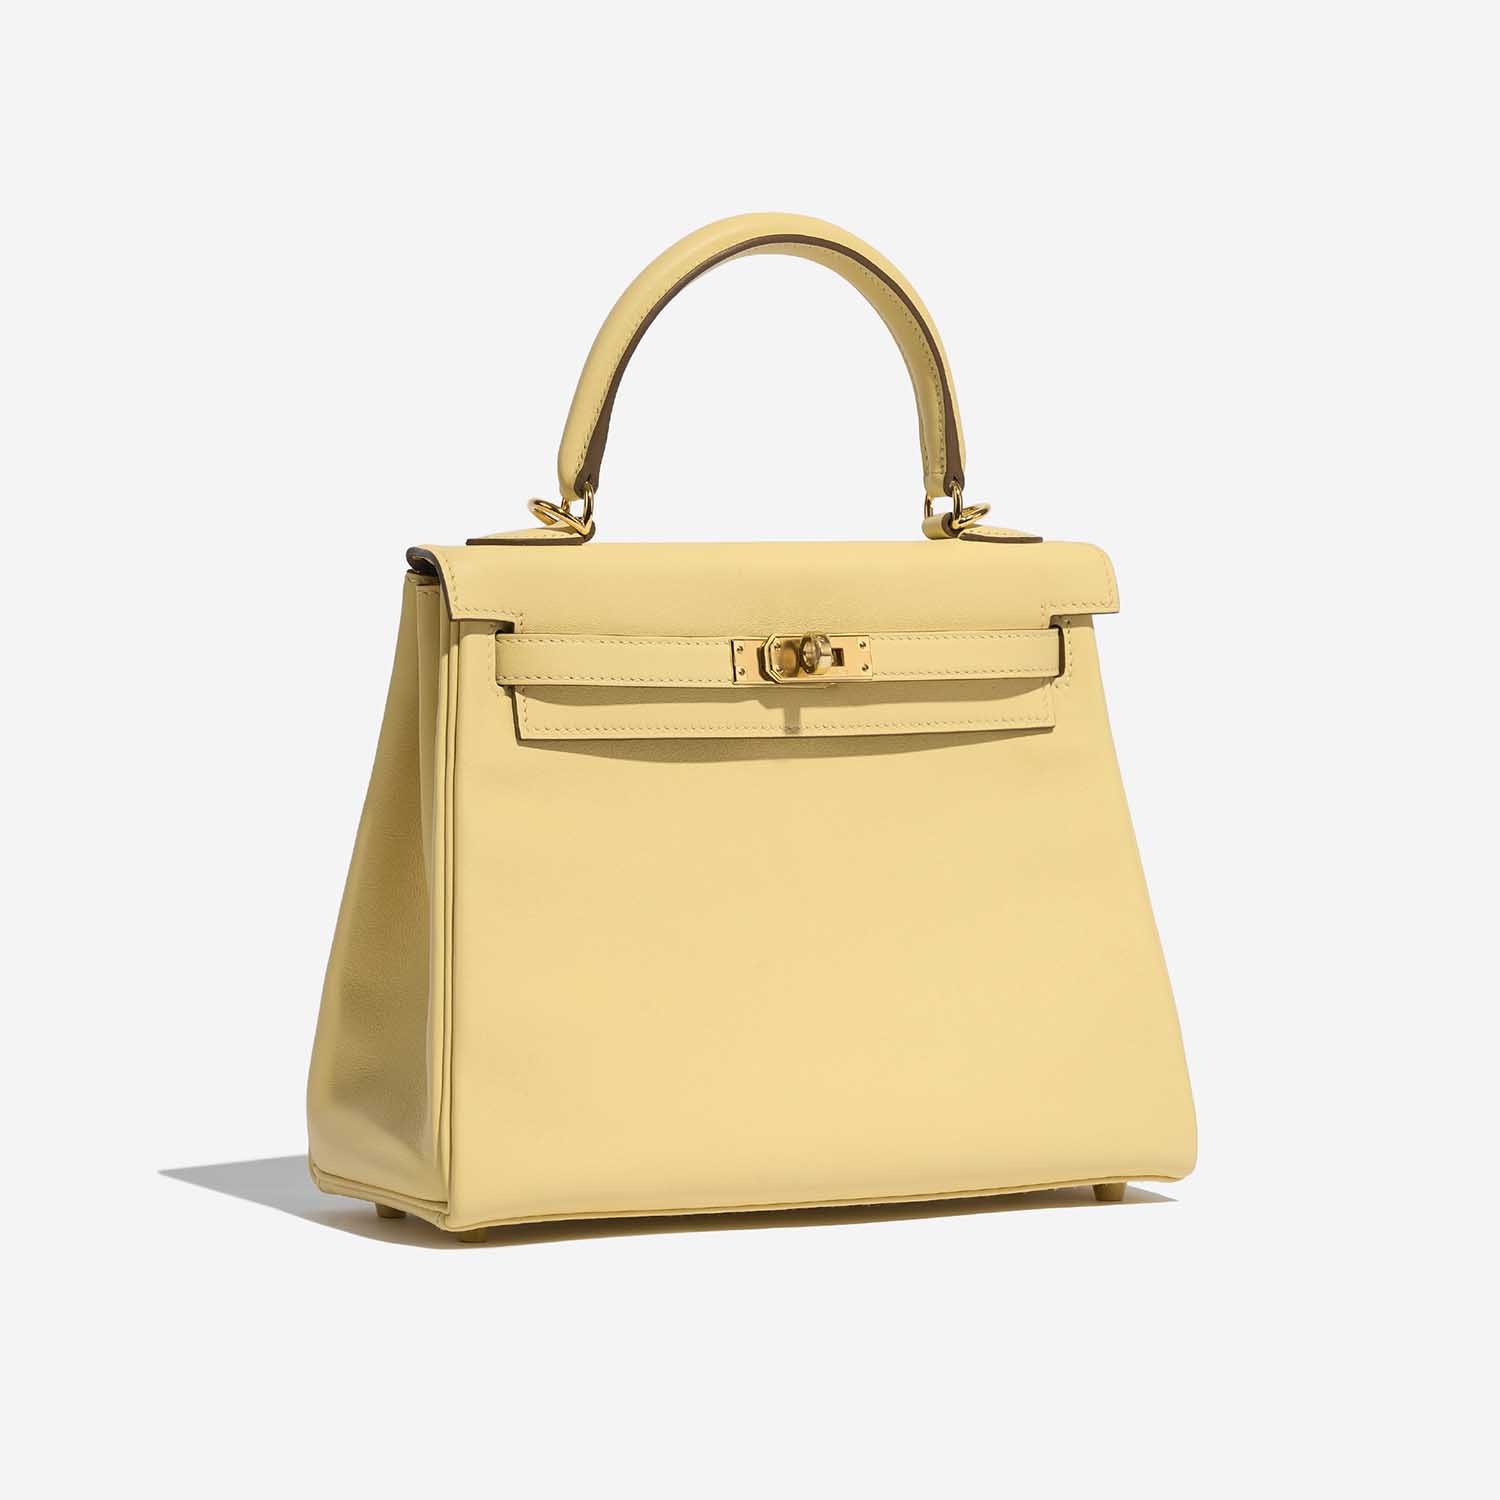 Pre-owned Hermès Tasche Kelly 25 Swift Jaune Poussin Yellow Side Front | Verkaufen Sie Ihre Designer-Tasche auf Saclab.com